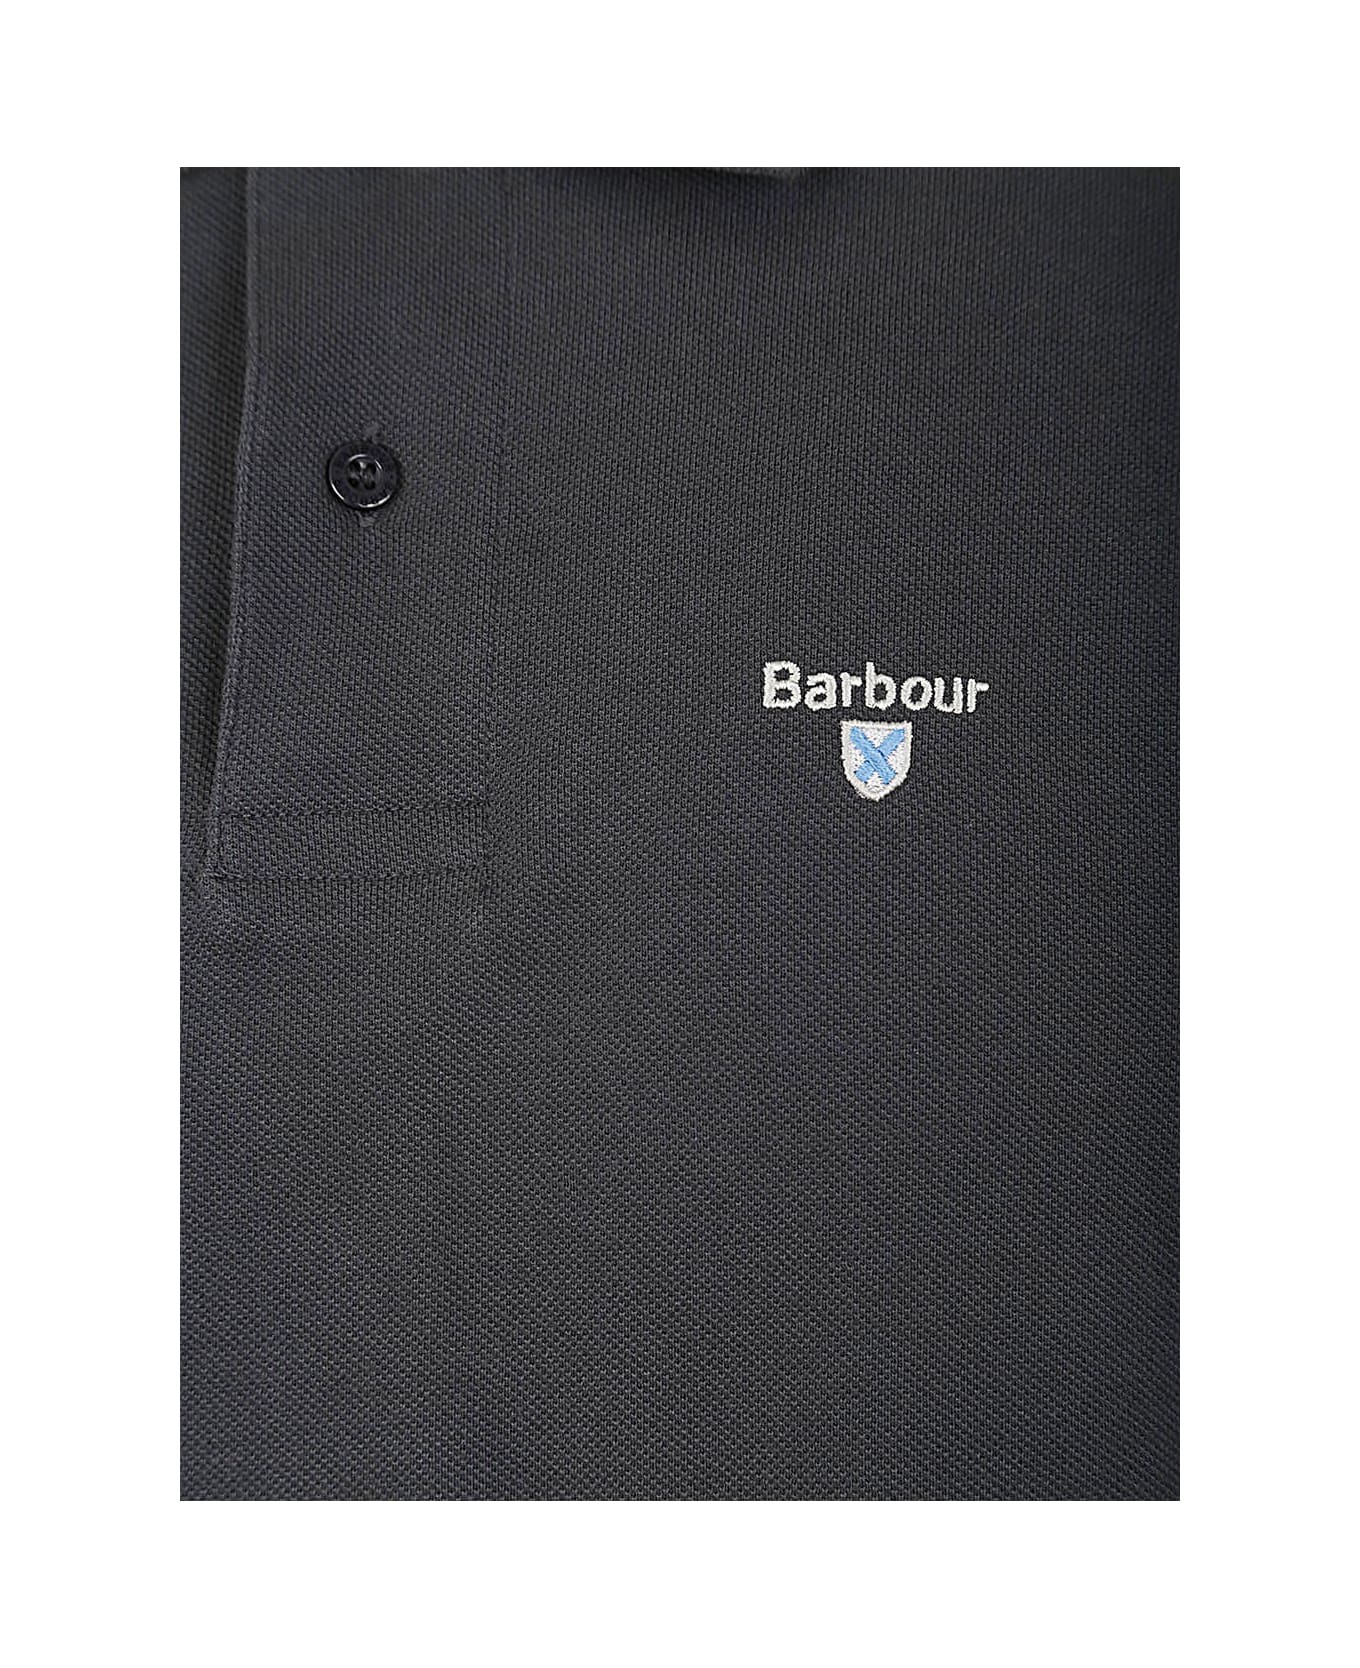 Barbour Tartan Pique Polo - Navy Dress